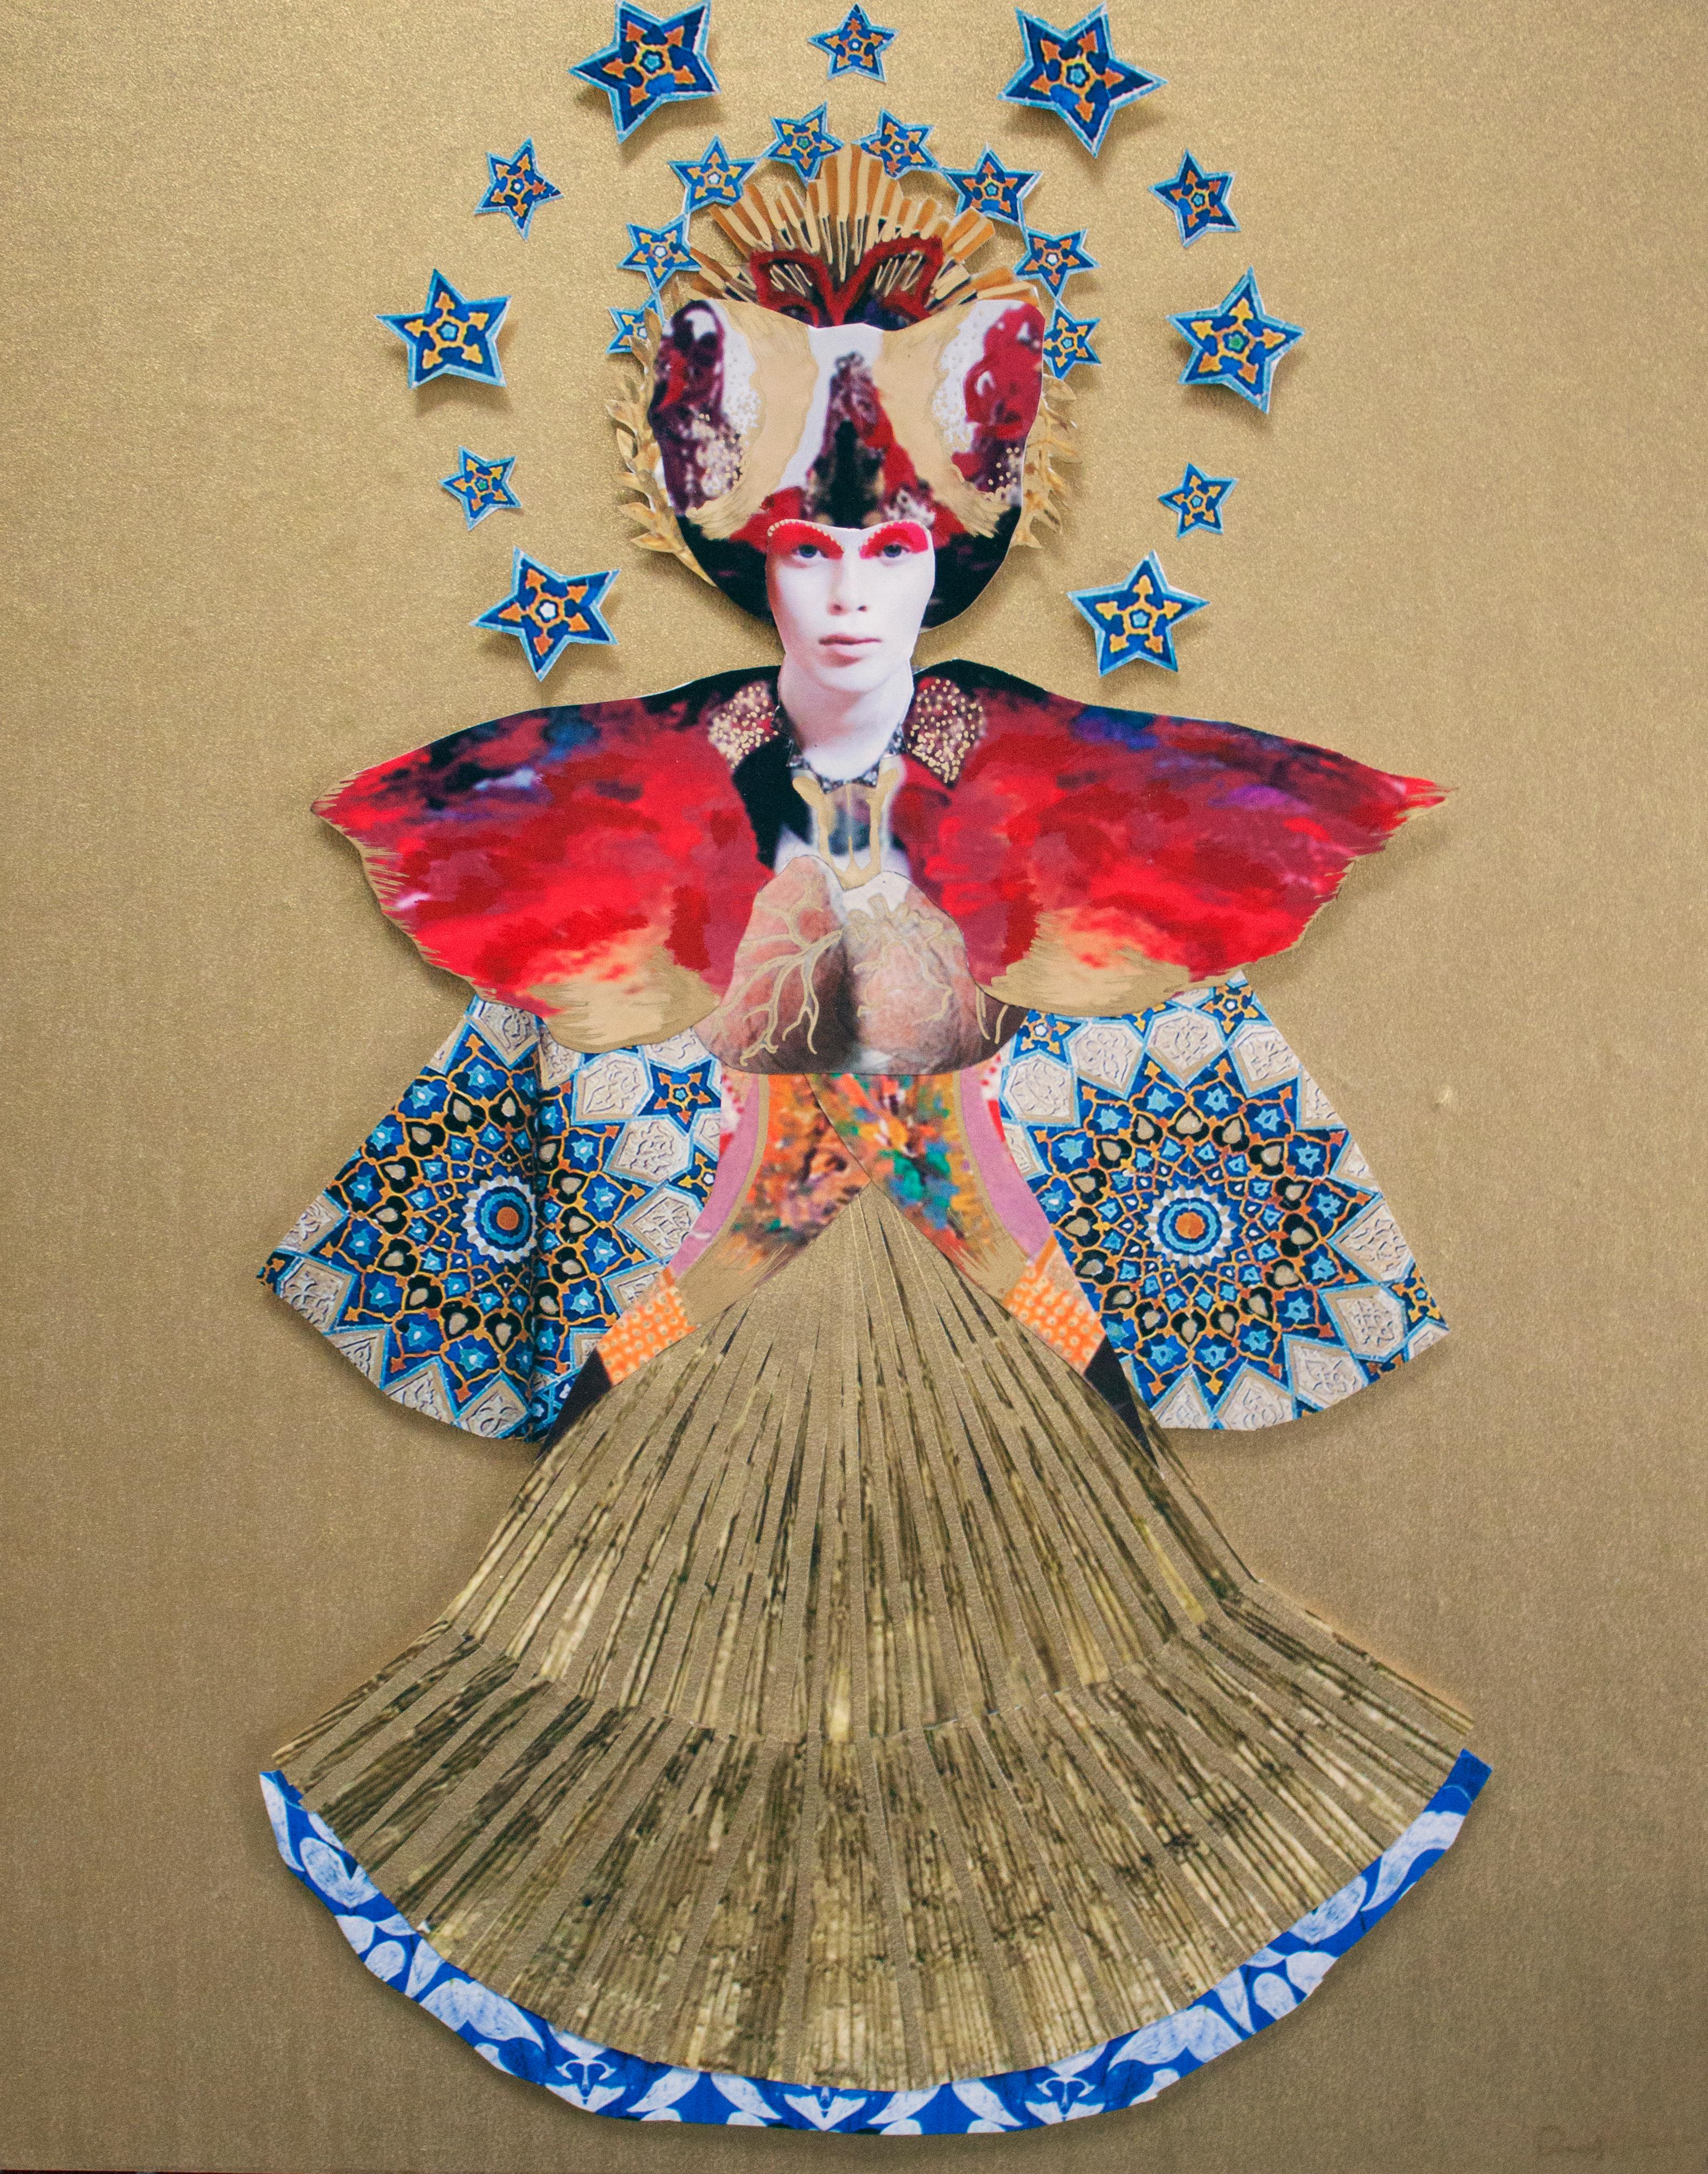 Déesse du feu, peinture et collage en relief or, rouge et bleu, portrait figuratif - Mixed Media Art de Deming King Harriman